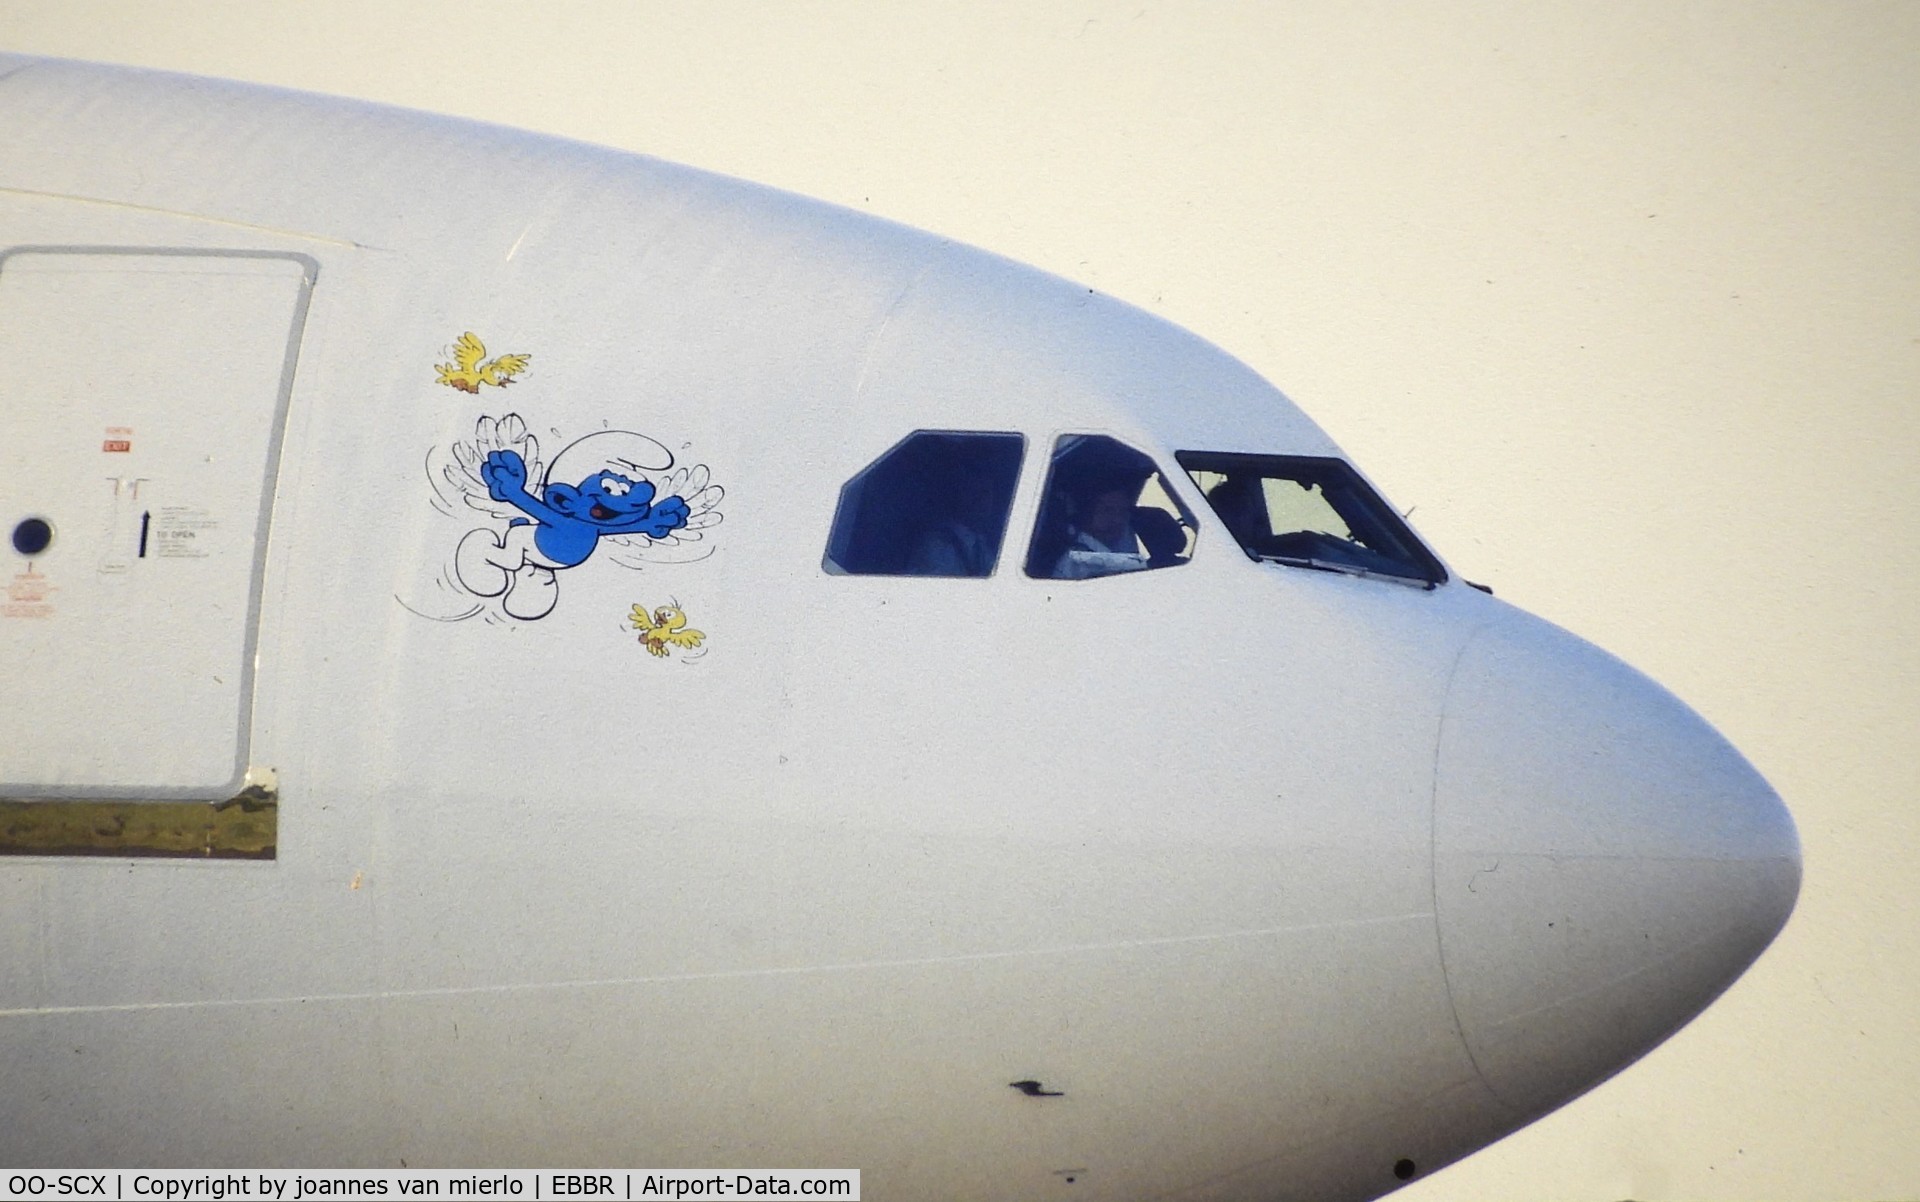 OO-SCX, 1993 Airbus A340-211 C/N 022, Slide scan